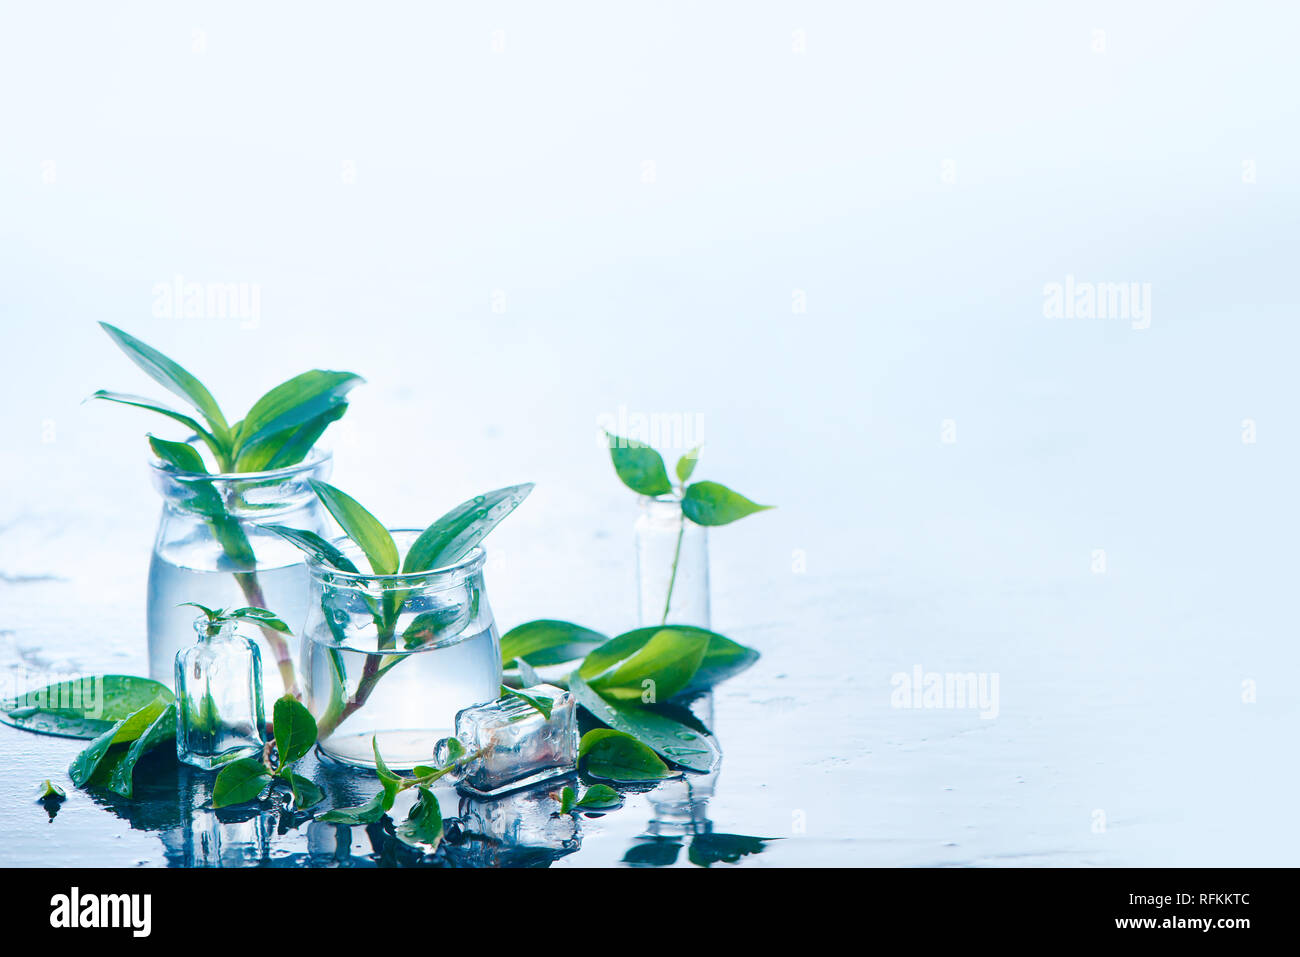 Las plantas verdes en tarros de vidrio cabezal. Claridad y frescura concepto con hojas y agua. Luz de fondo con espacio de copia Foto de stock